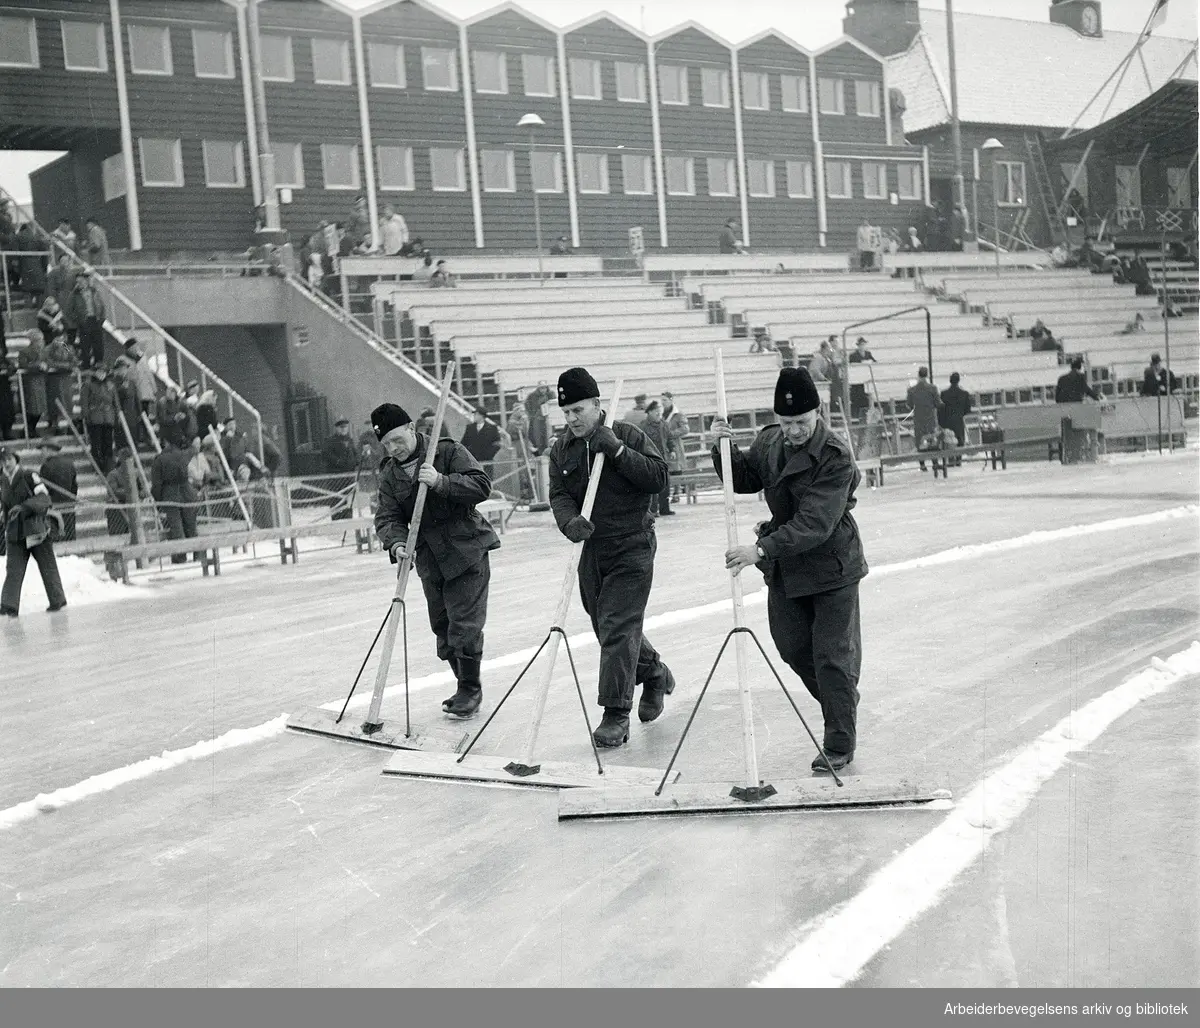 Banemannskapet på Bislett Stadion preparerer isen før hurtigløpene på skøyter under vinter-ol i Oslo, februar 1952